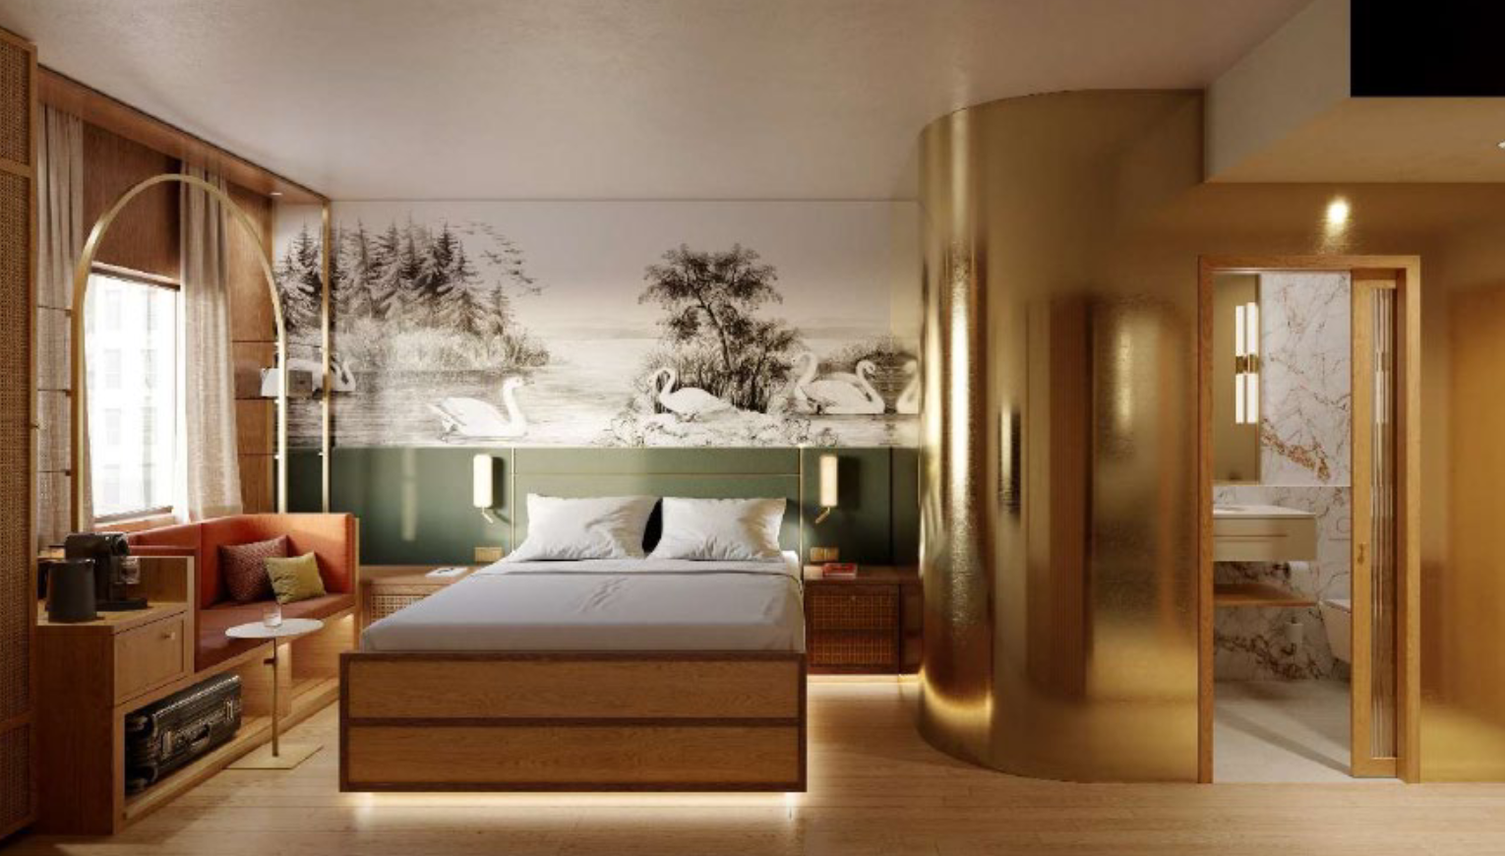 Luzerner 4-Sterne-Hotel motzt 150 Zimmer auf